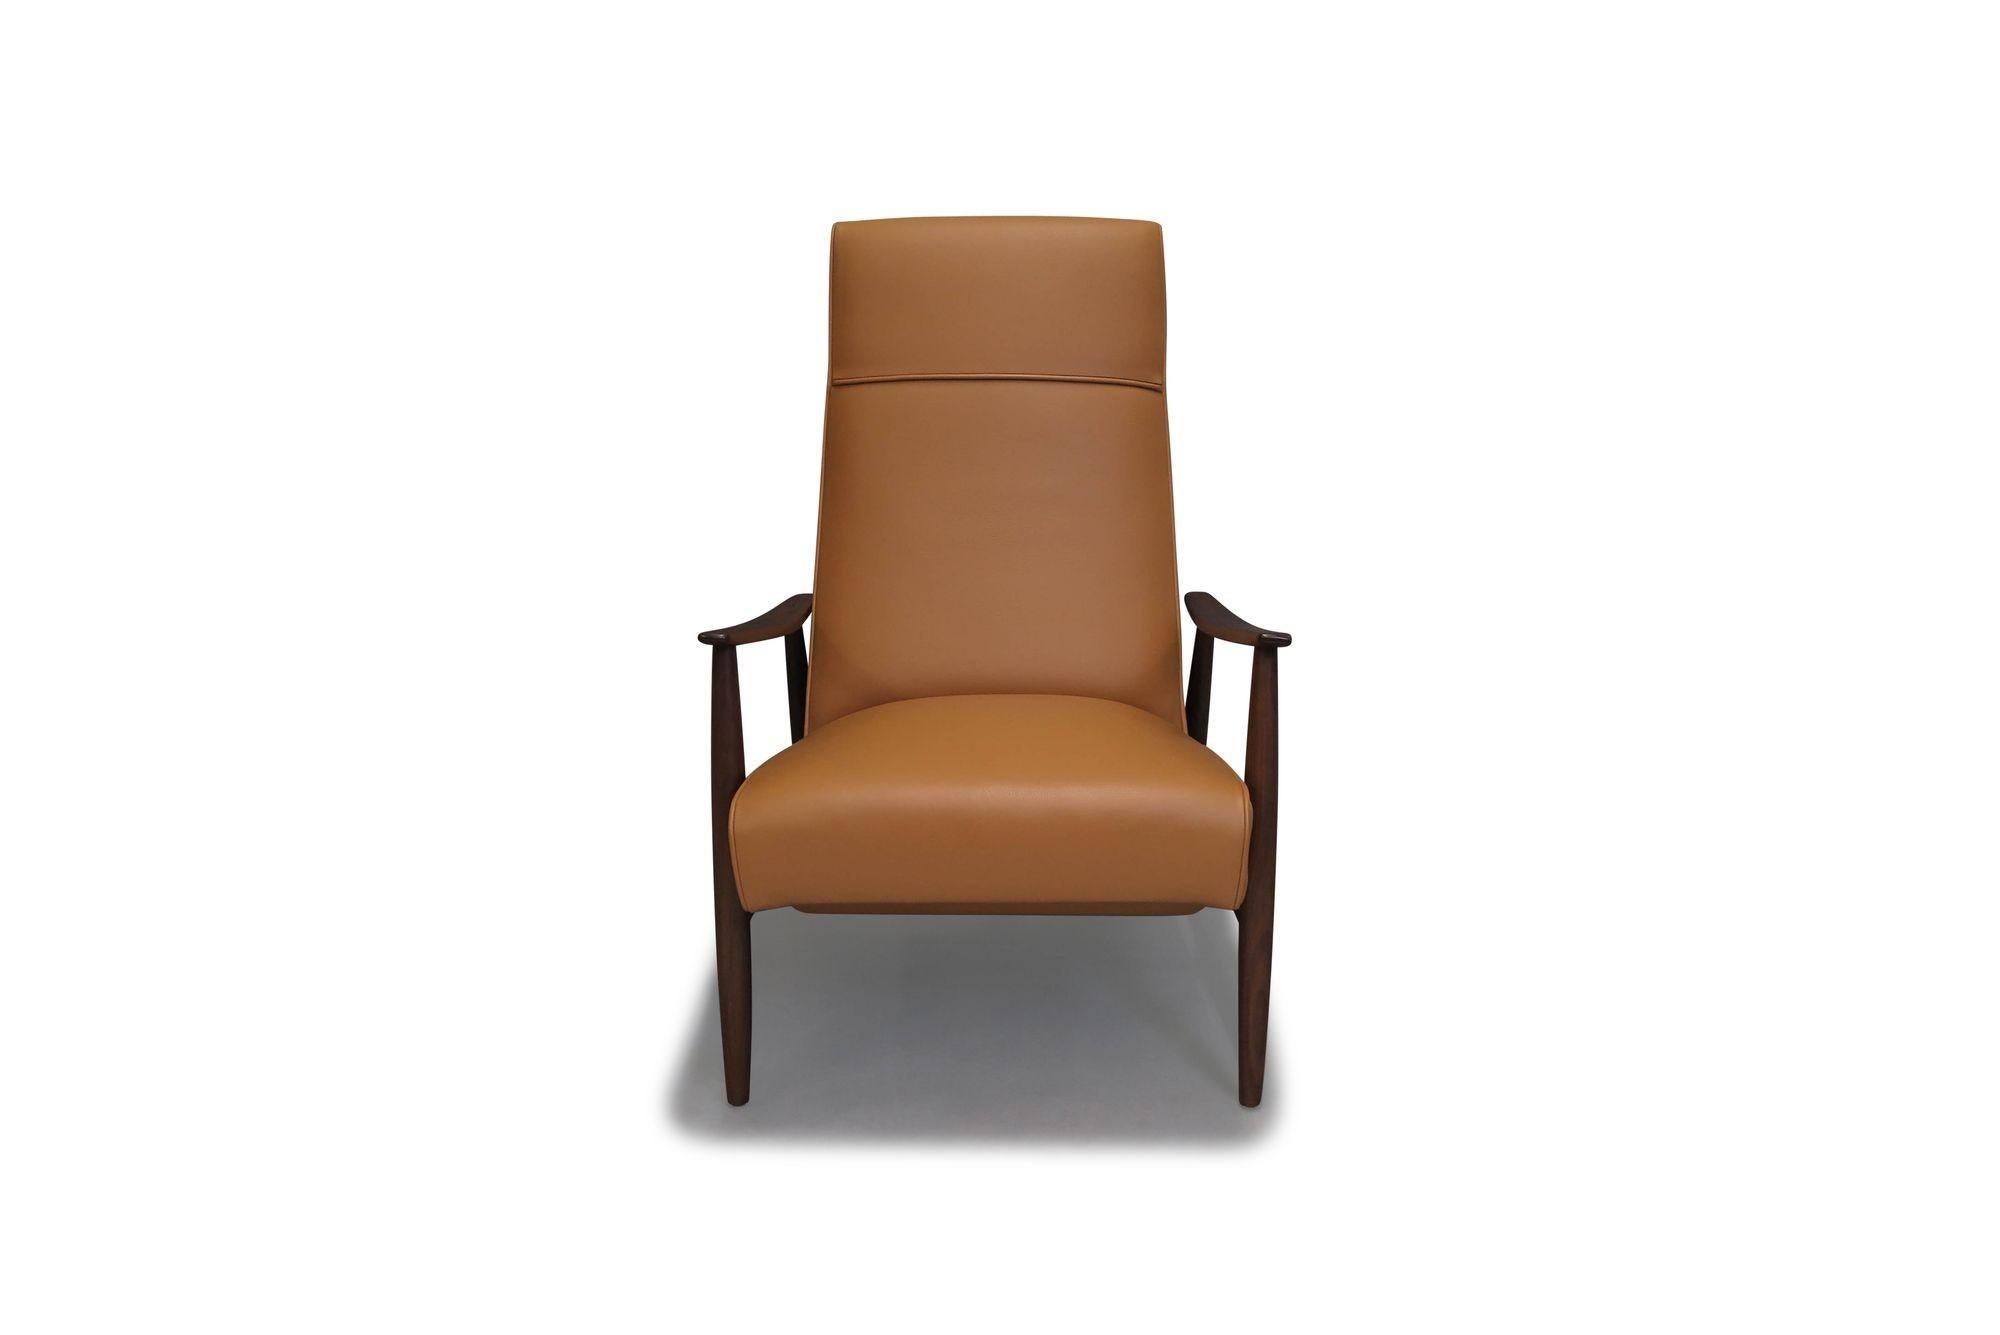 Conçu à l'origine en 1965 par Milo Baughman, ce fauteuil inclinable emblématique de la modernité du milieu du siècle est une chaise longue intemporelle pour tous les environnements. Avec un cadre en noyer noir massif et des accoudoirs inclinés, le